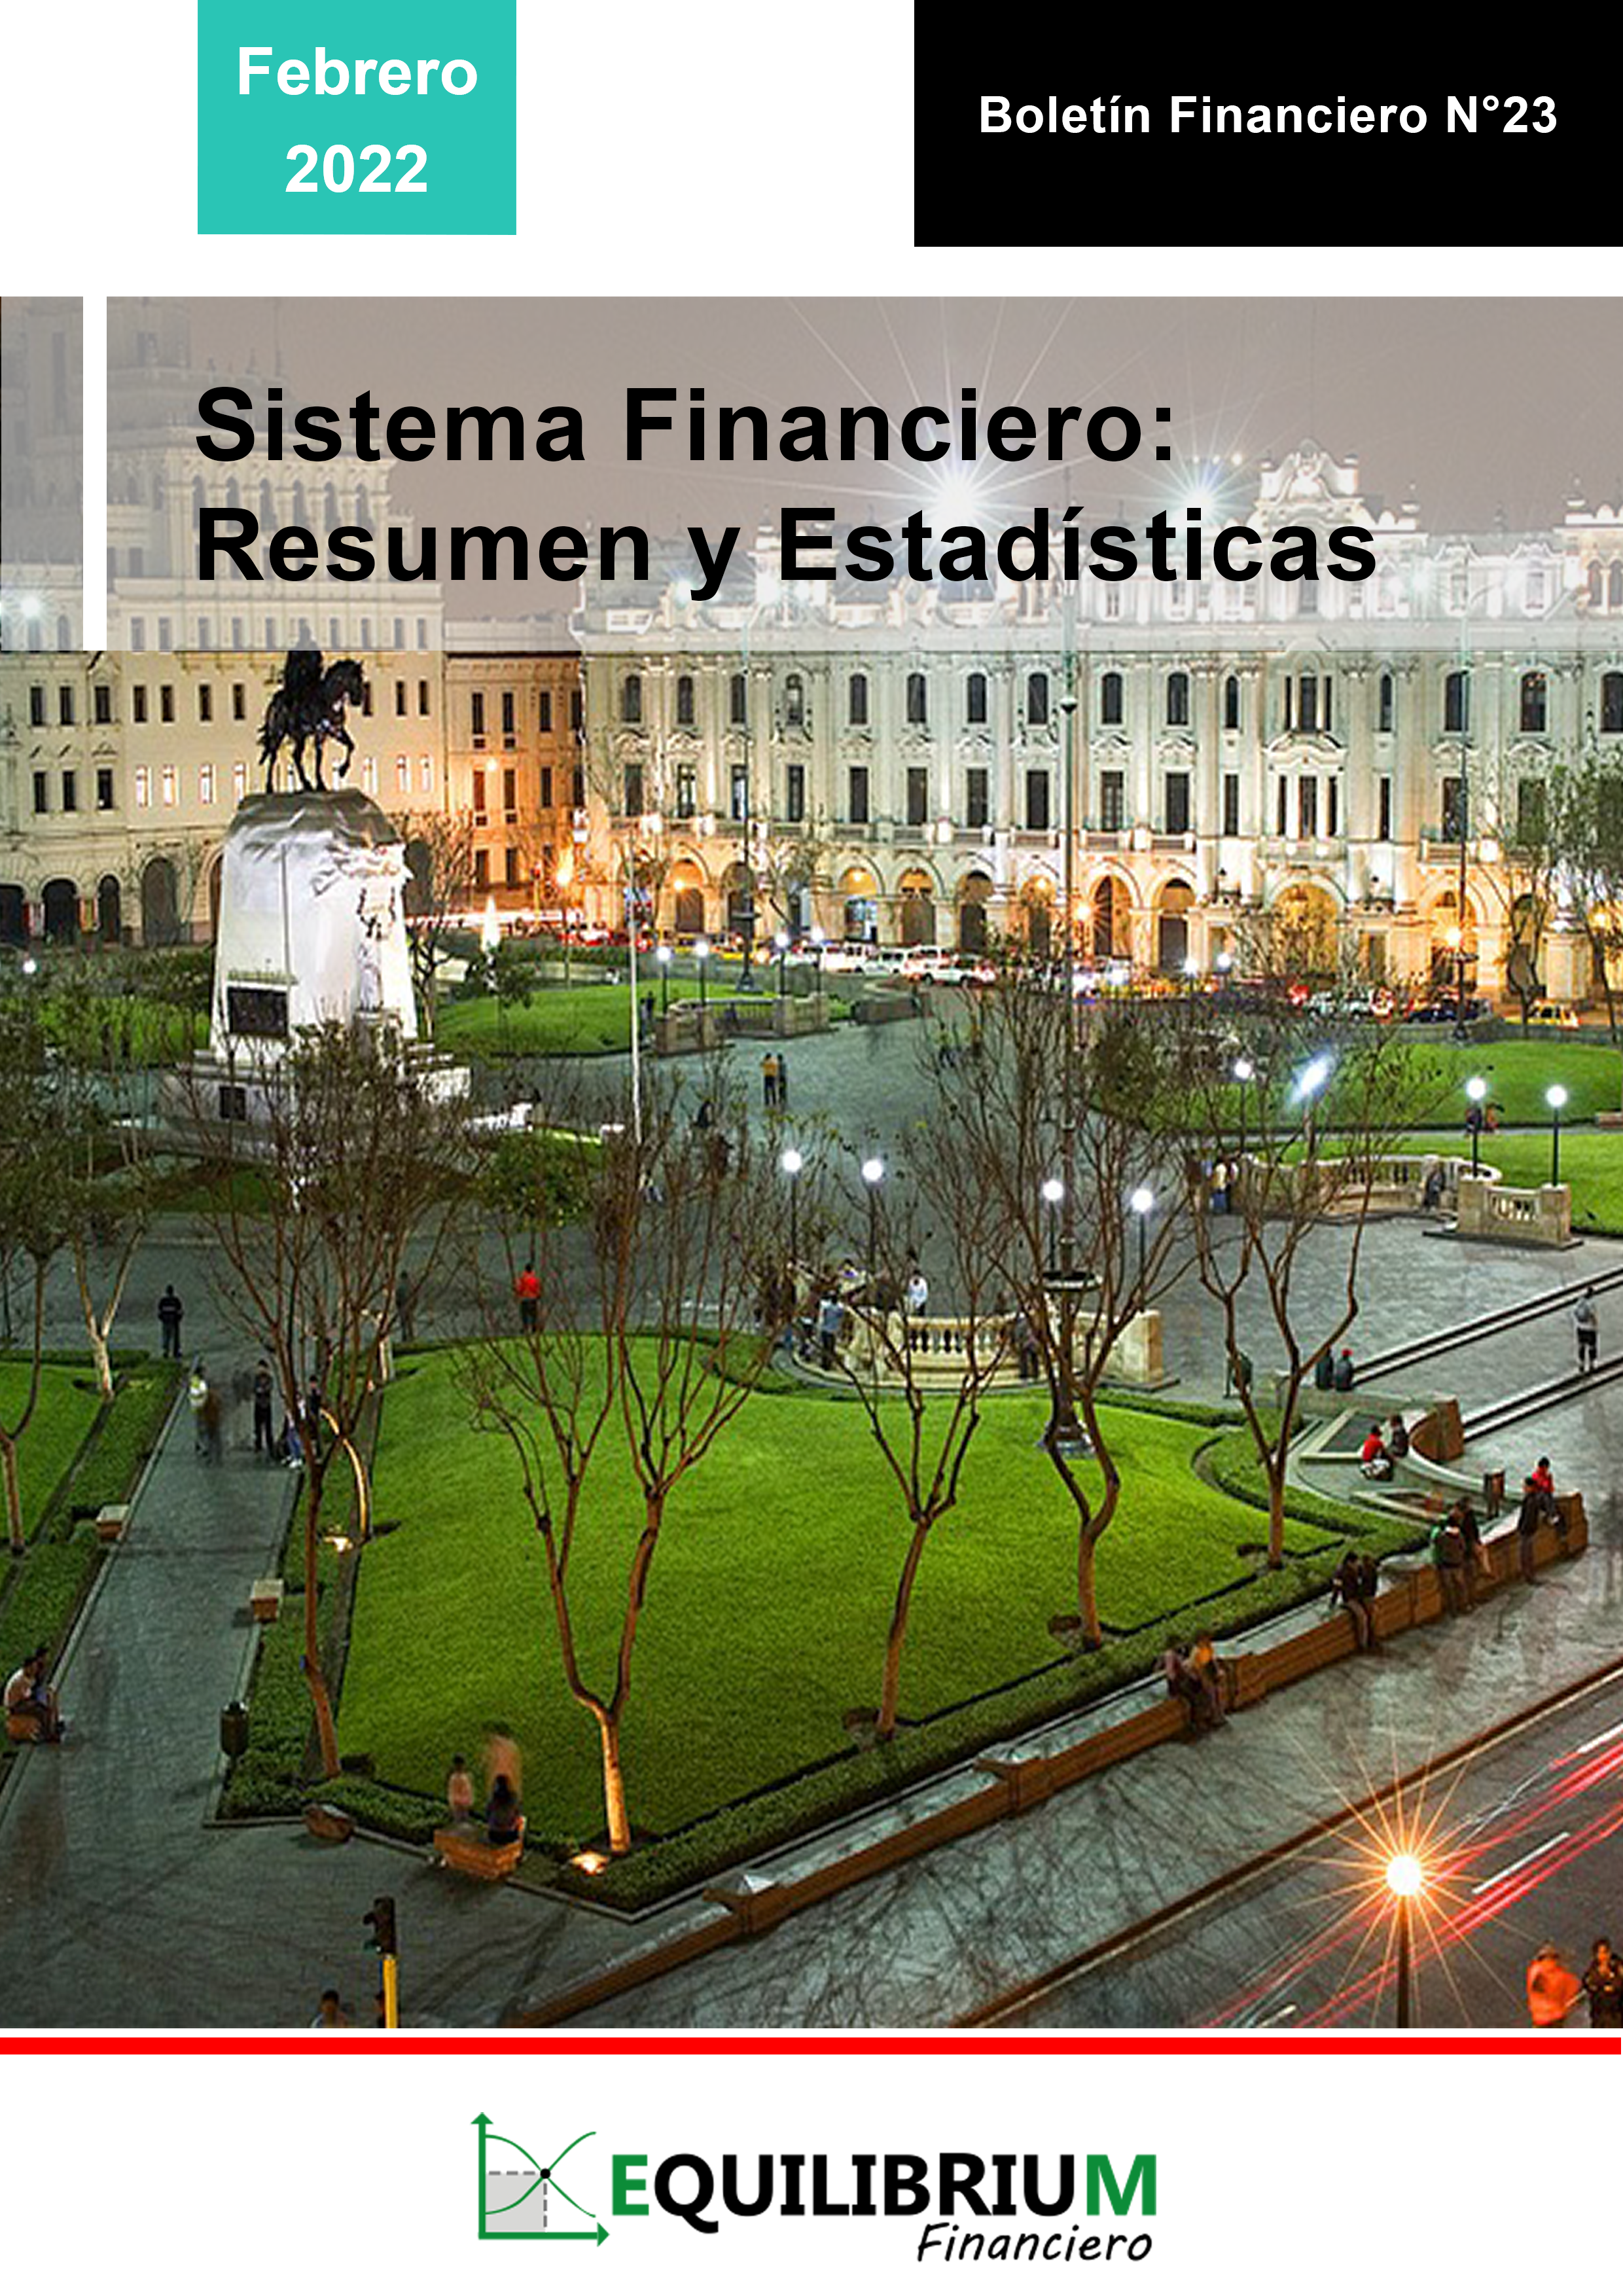 Sistema Financiero: Resumen y Estadísticas Febrero 2022